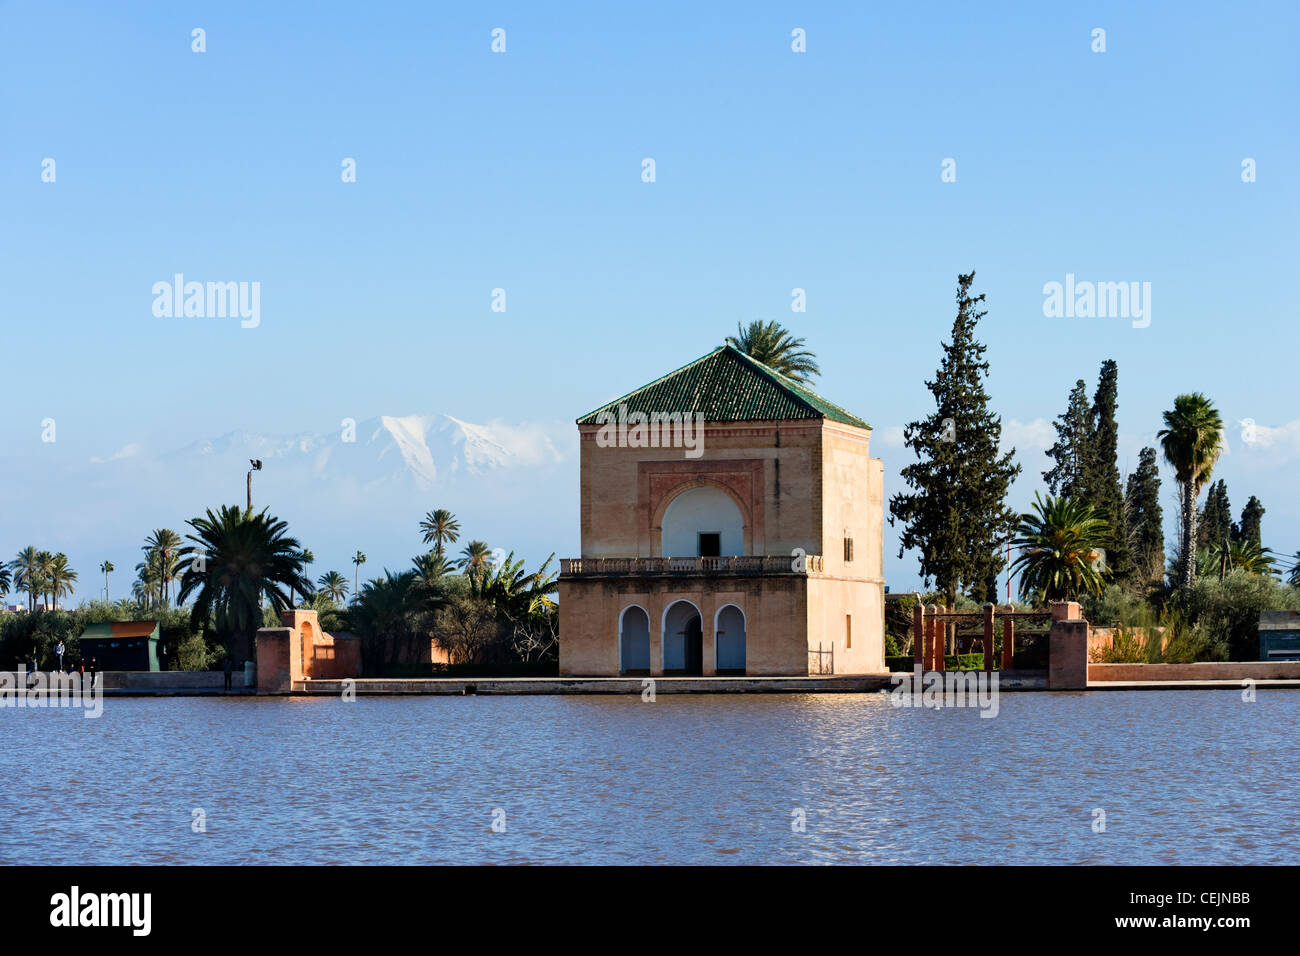 Vue sur le pavillon et piscine dans le jardins de la Ménara avec enneigés des montagnes de l'Atlas derrière, Marrakech, Maroc, Afrique du Nord Banque D'Images